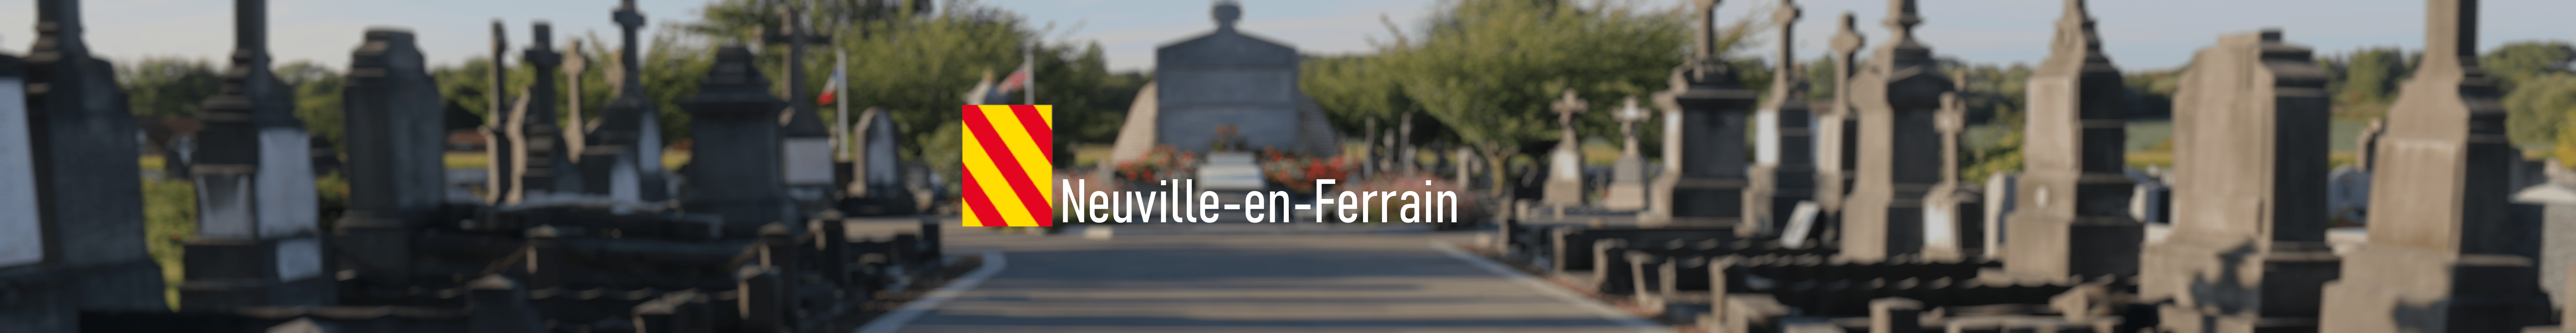 Neuville-en-Ferrain